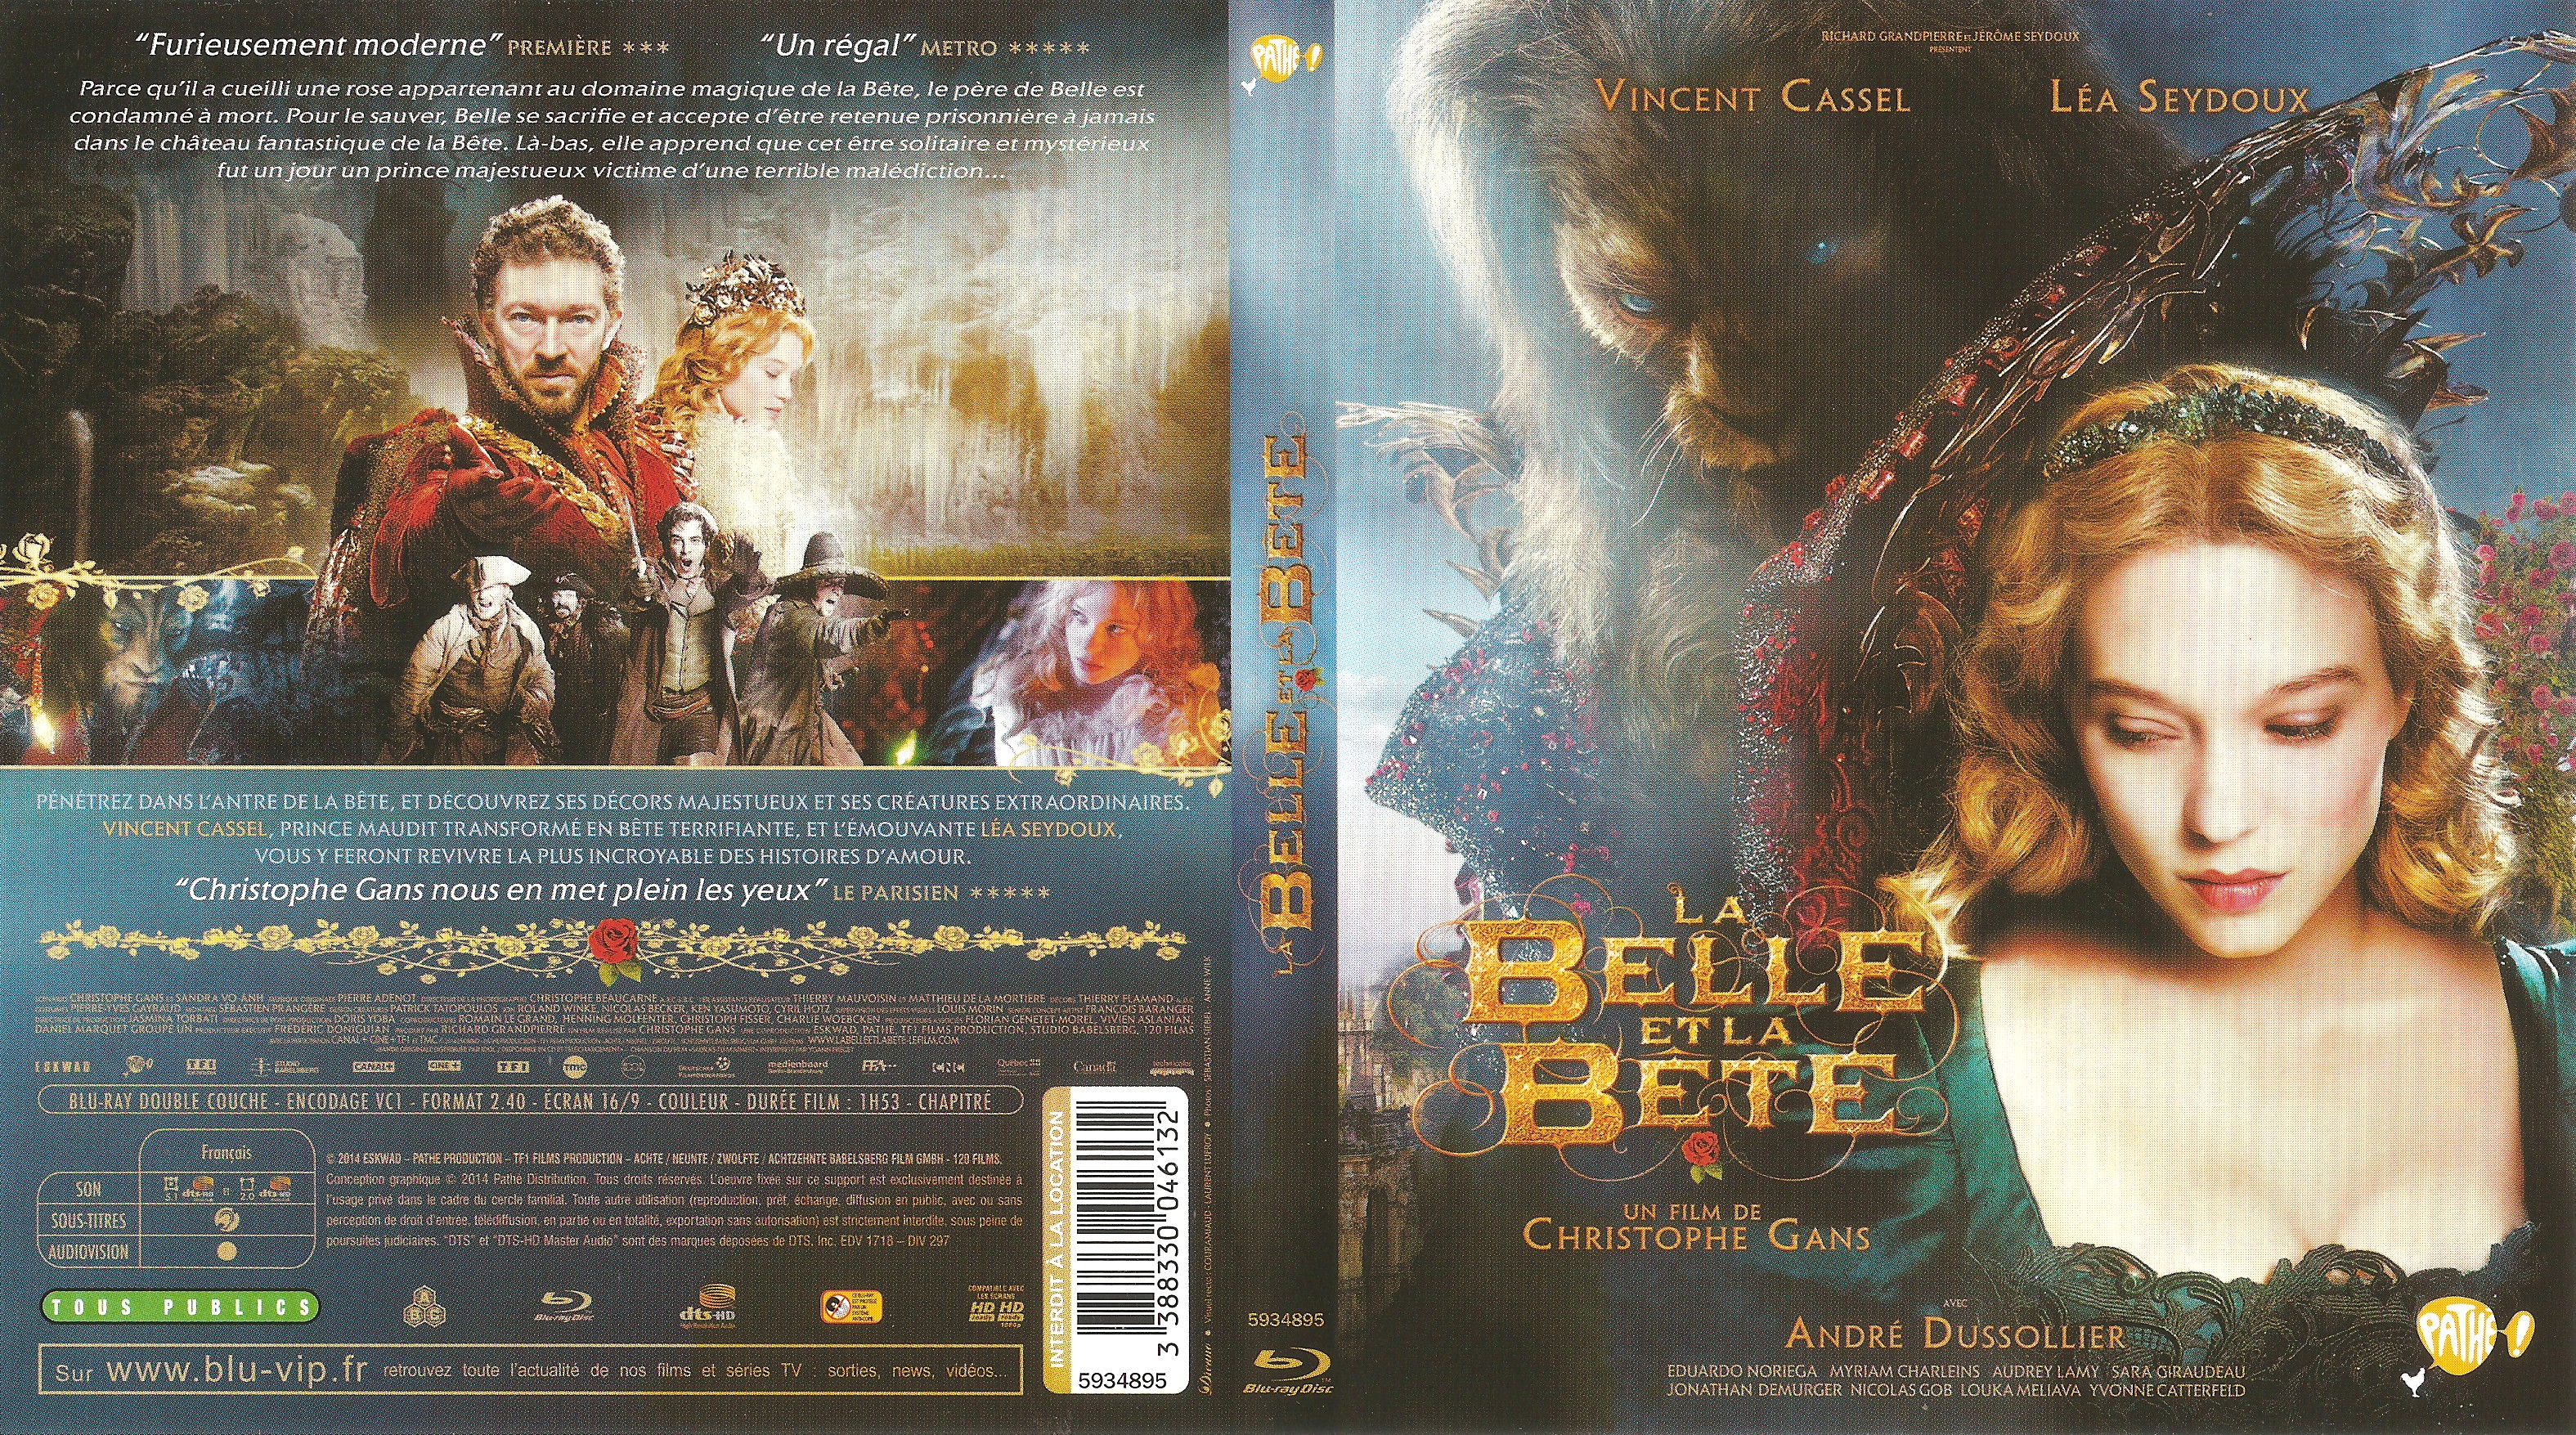 Jaquette DVD La belle et la bte (2014) (BLU-RAY)